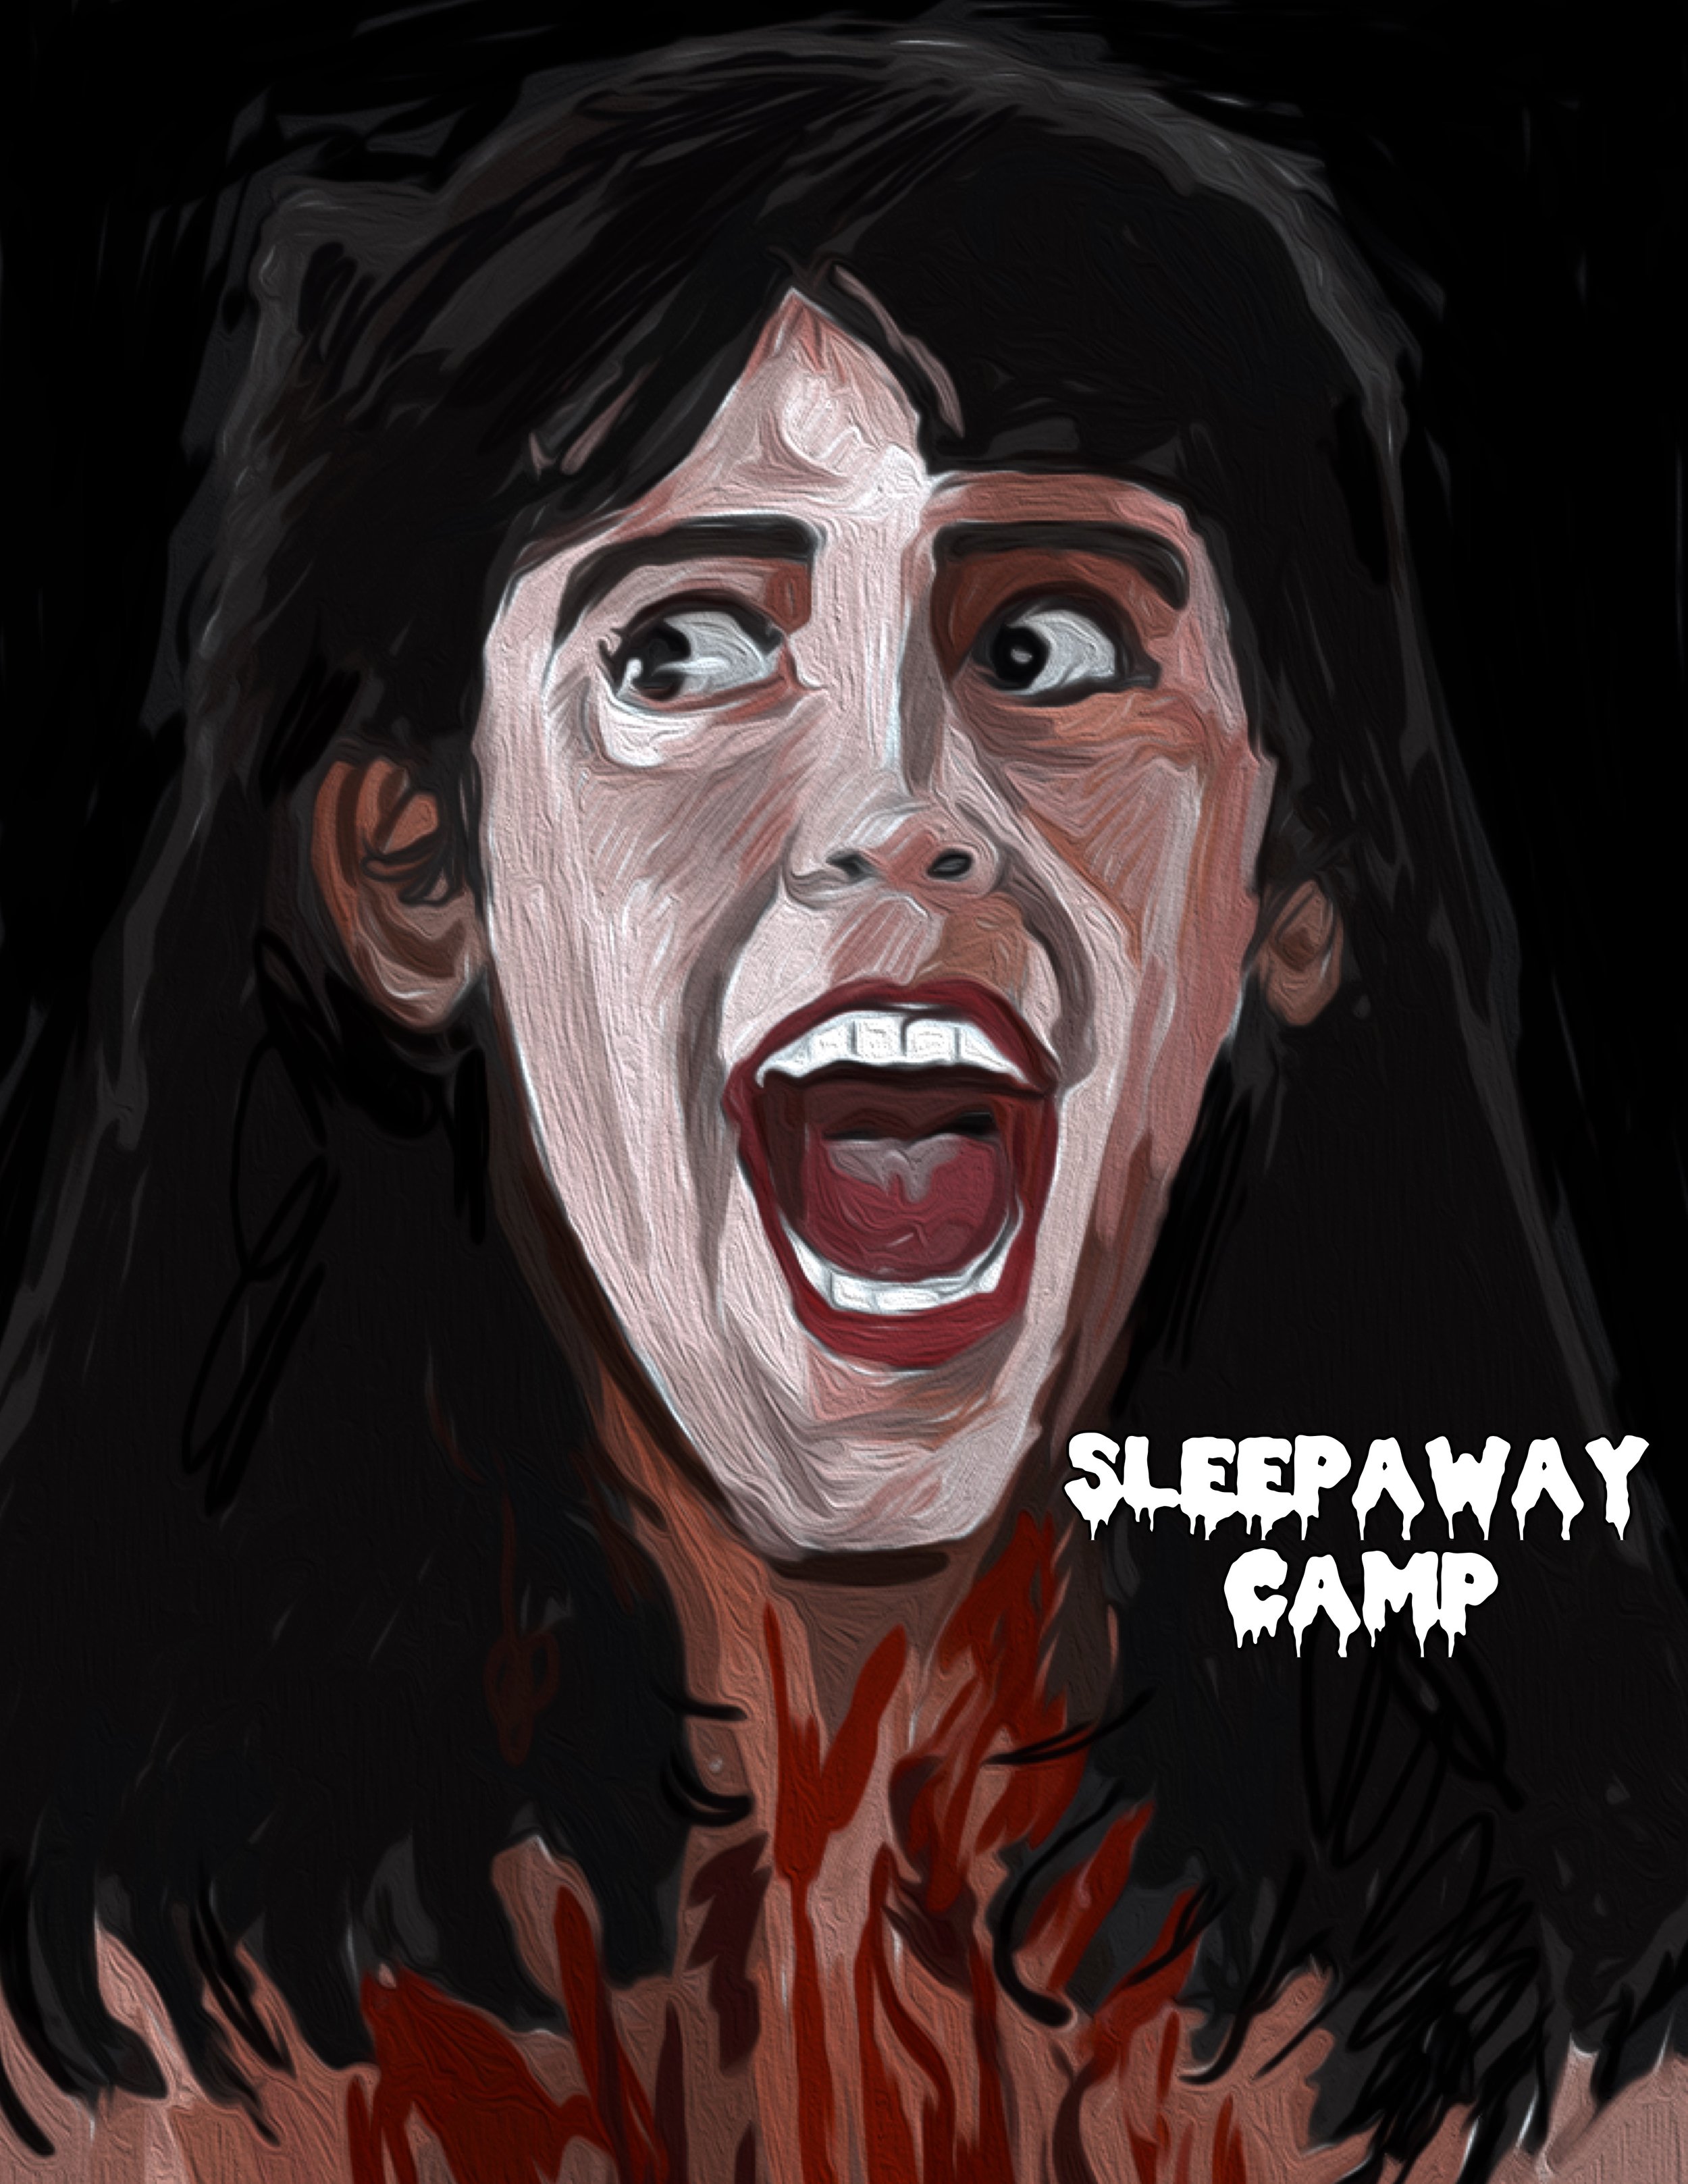 Sleepaway Camp (1983)